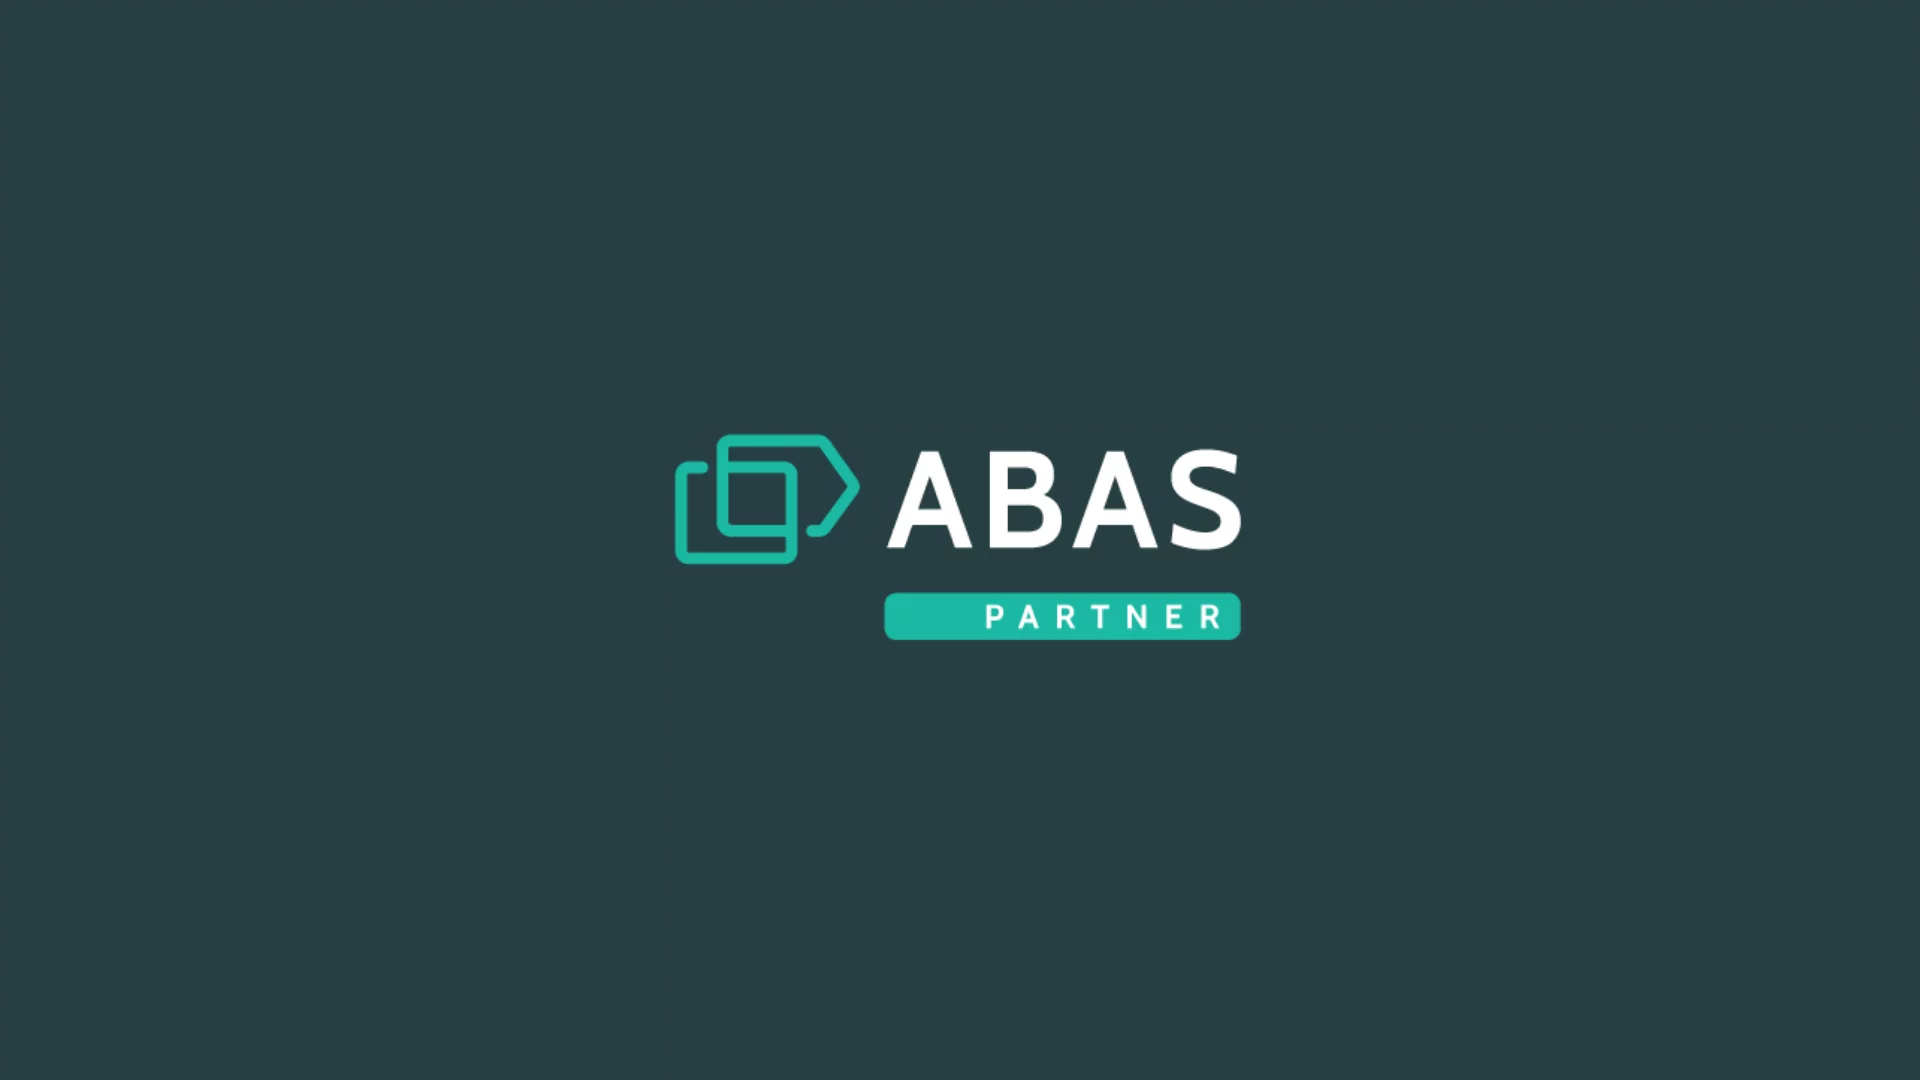 Nowe logo symbolem nowej strategii i silnej pozycji Grupy abas